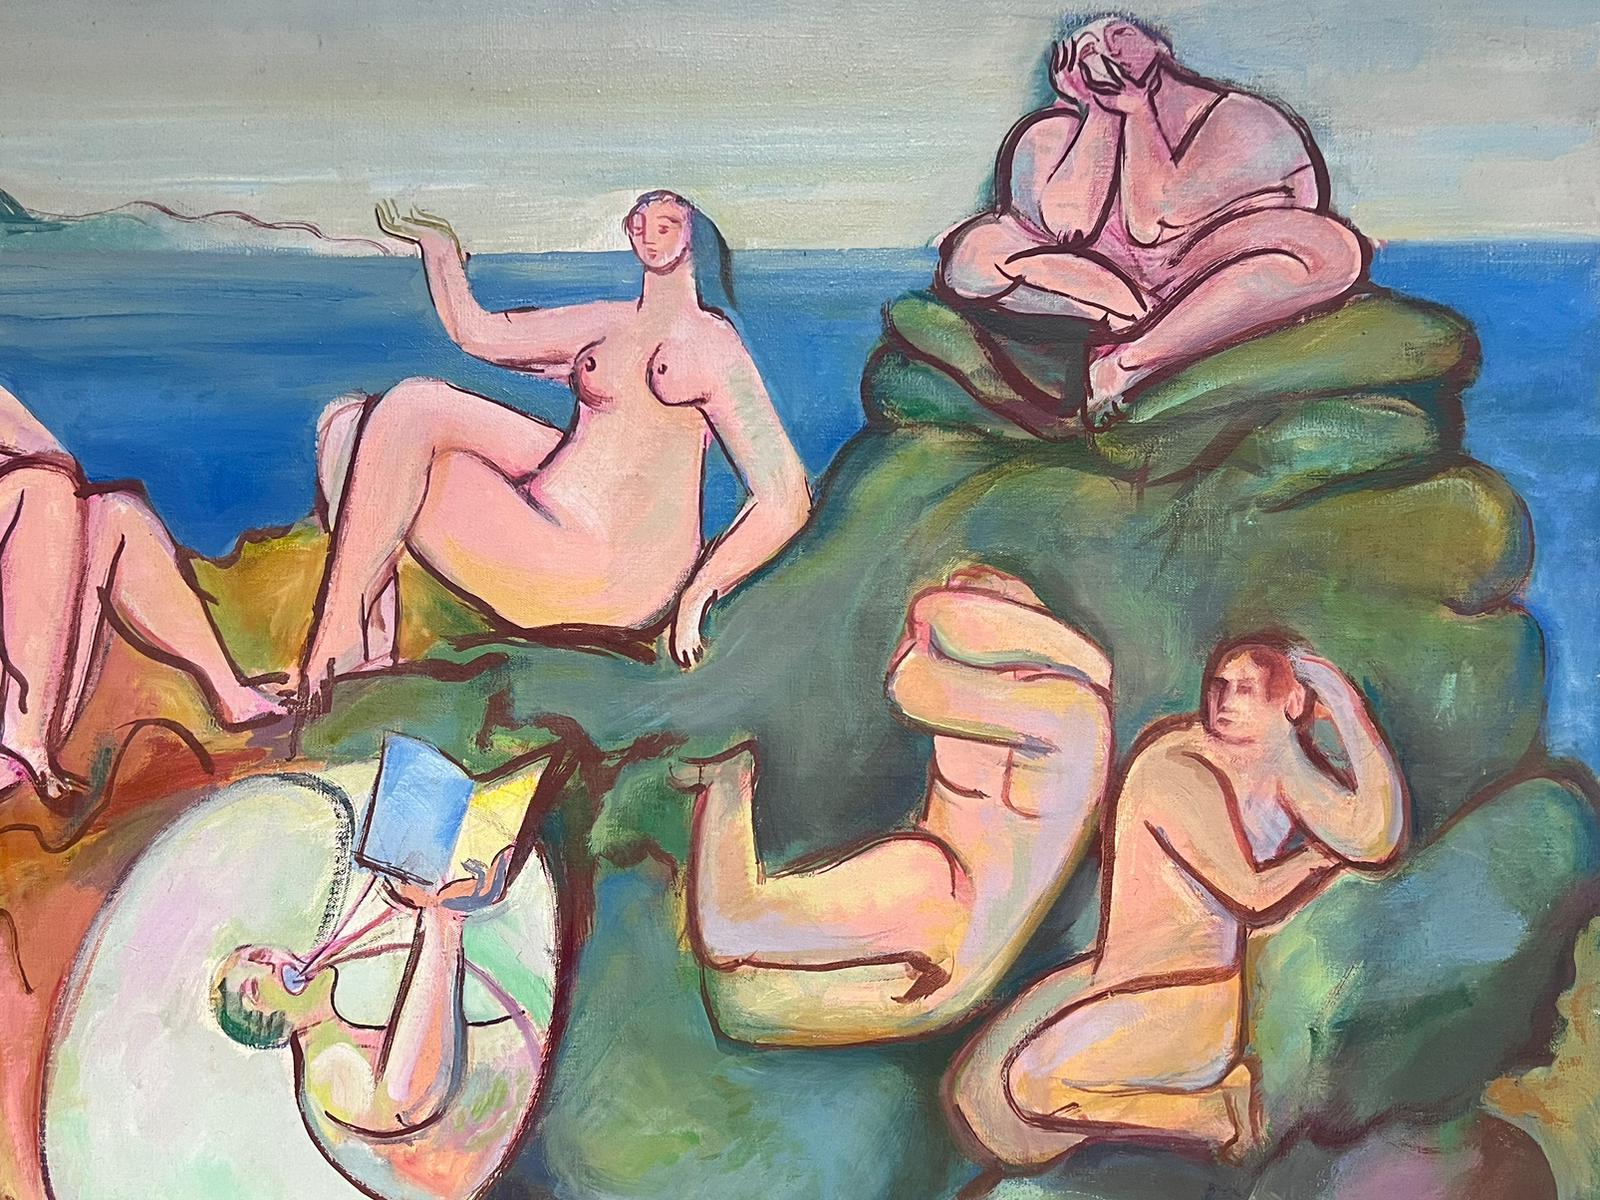 Énormes nus mythologiques à l'huile de style moderniste français des années 1950 sur la côte rocheuse - Painting de circle of Pablo Picasso